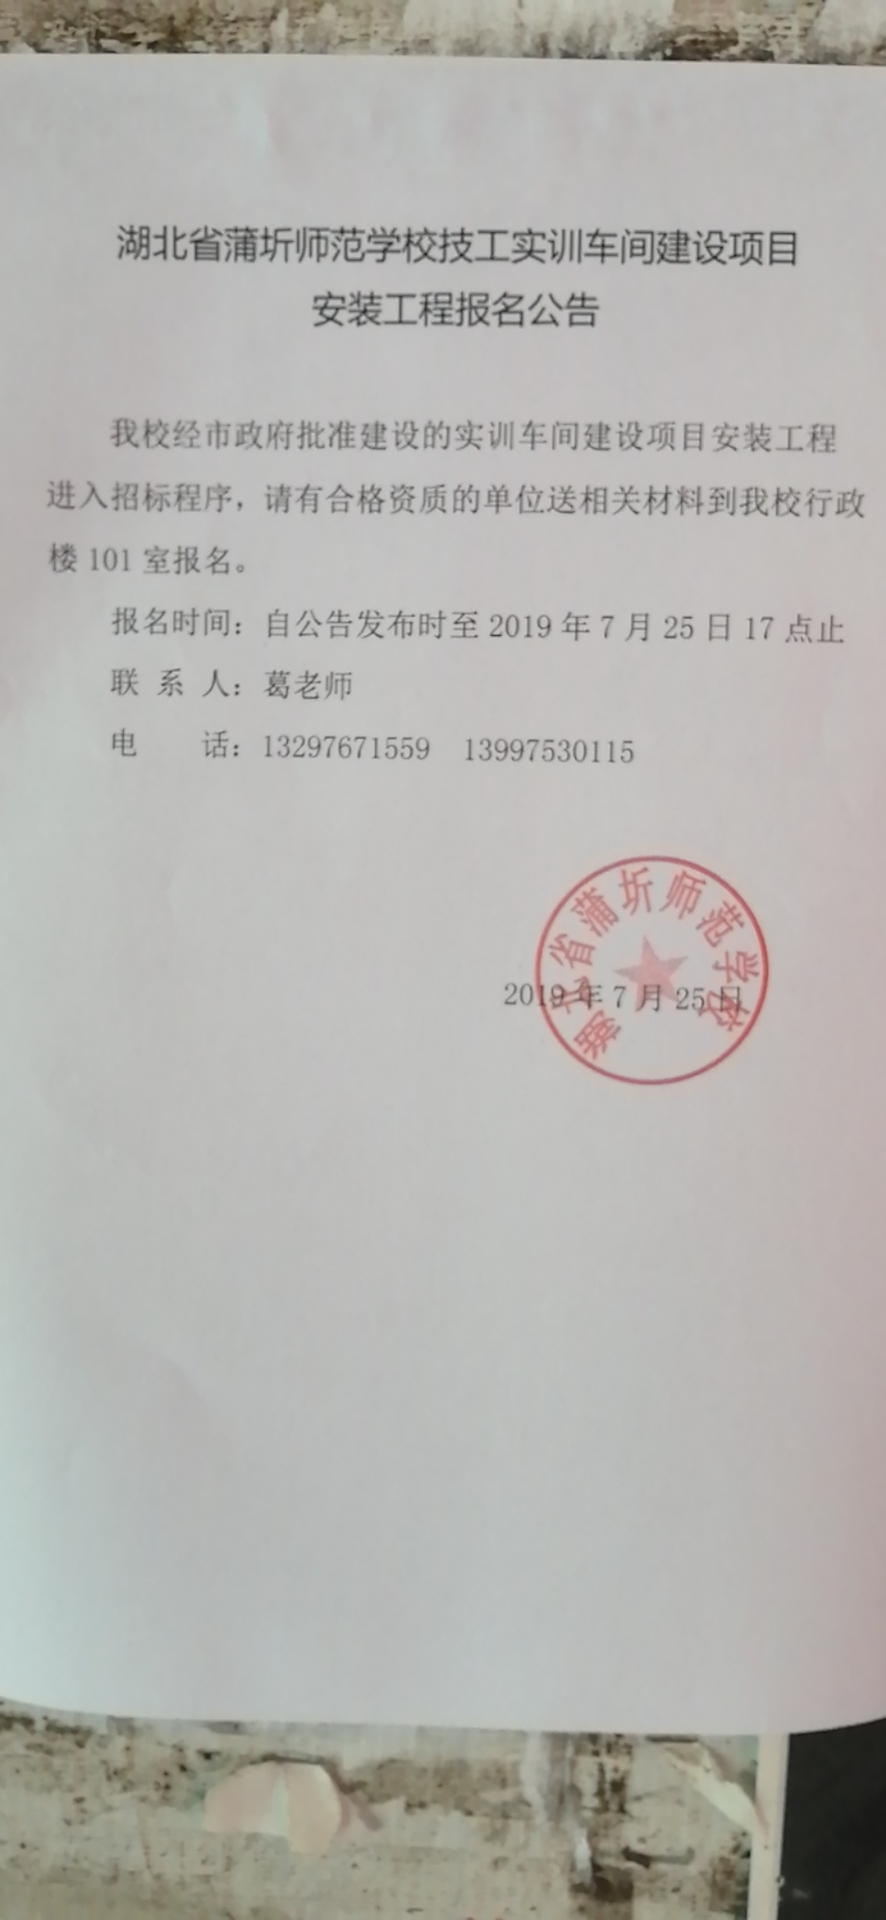 湖北省蒲圻师范学校技工实训车间建设项目安装工程报名公告